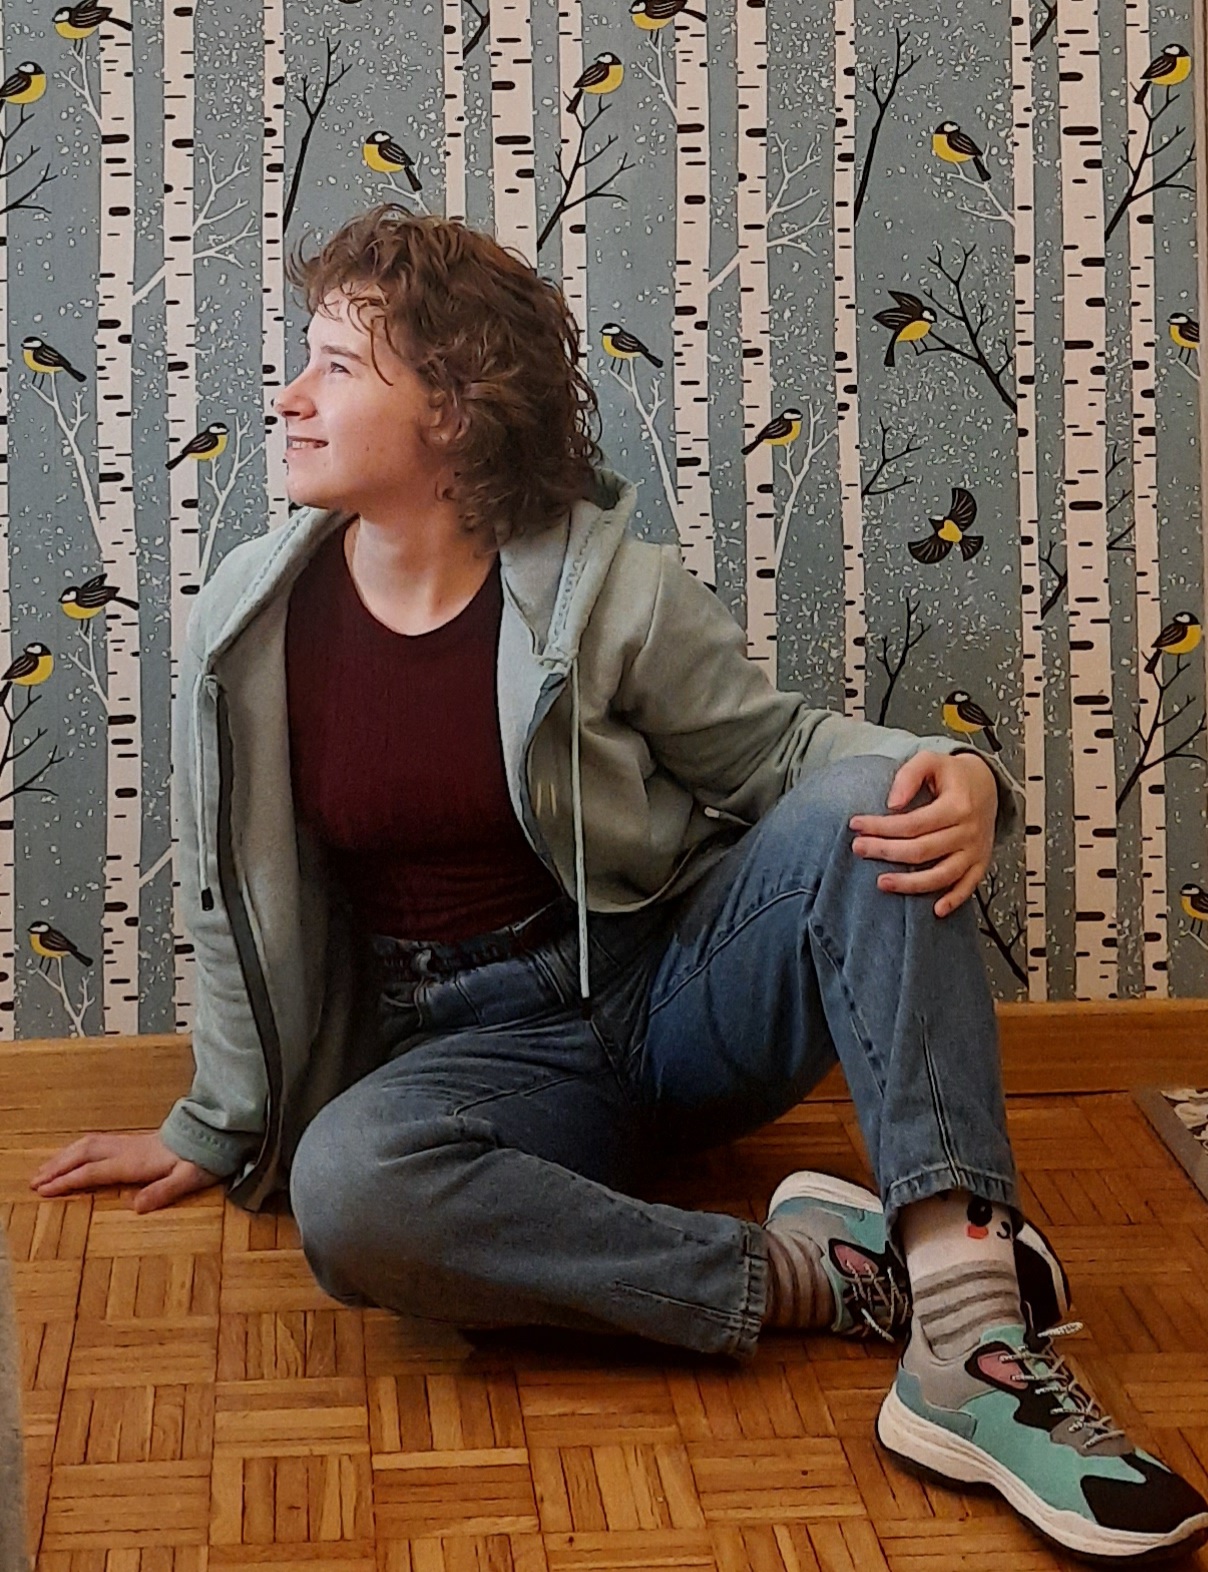 Joanna Puchalska siedzi na drewnianej podłodze. Joanna jest młodą kobietą z kręconymi włosami. Ubrana jest w bluze z kapturem, dżinsy i adidasy. W tle ściana w kolorową tapetą z ptakami.